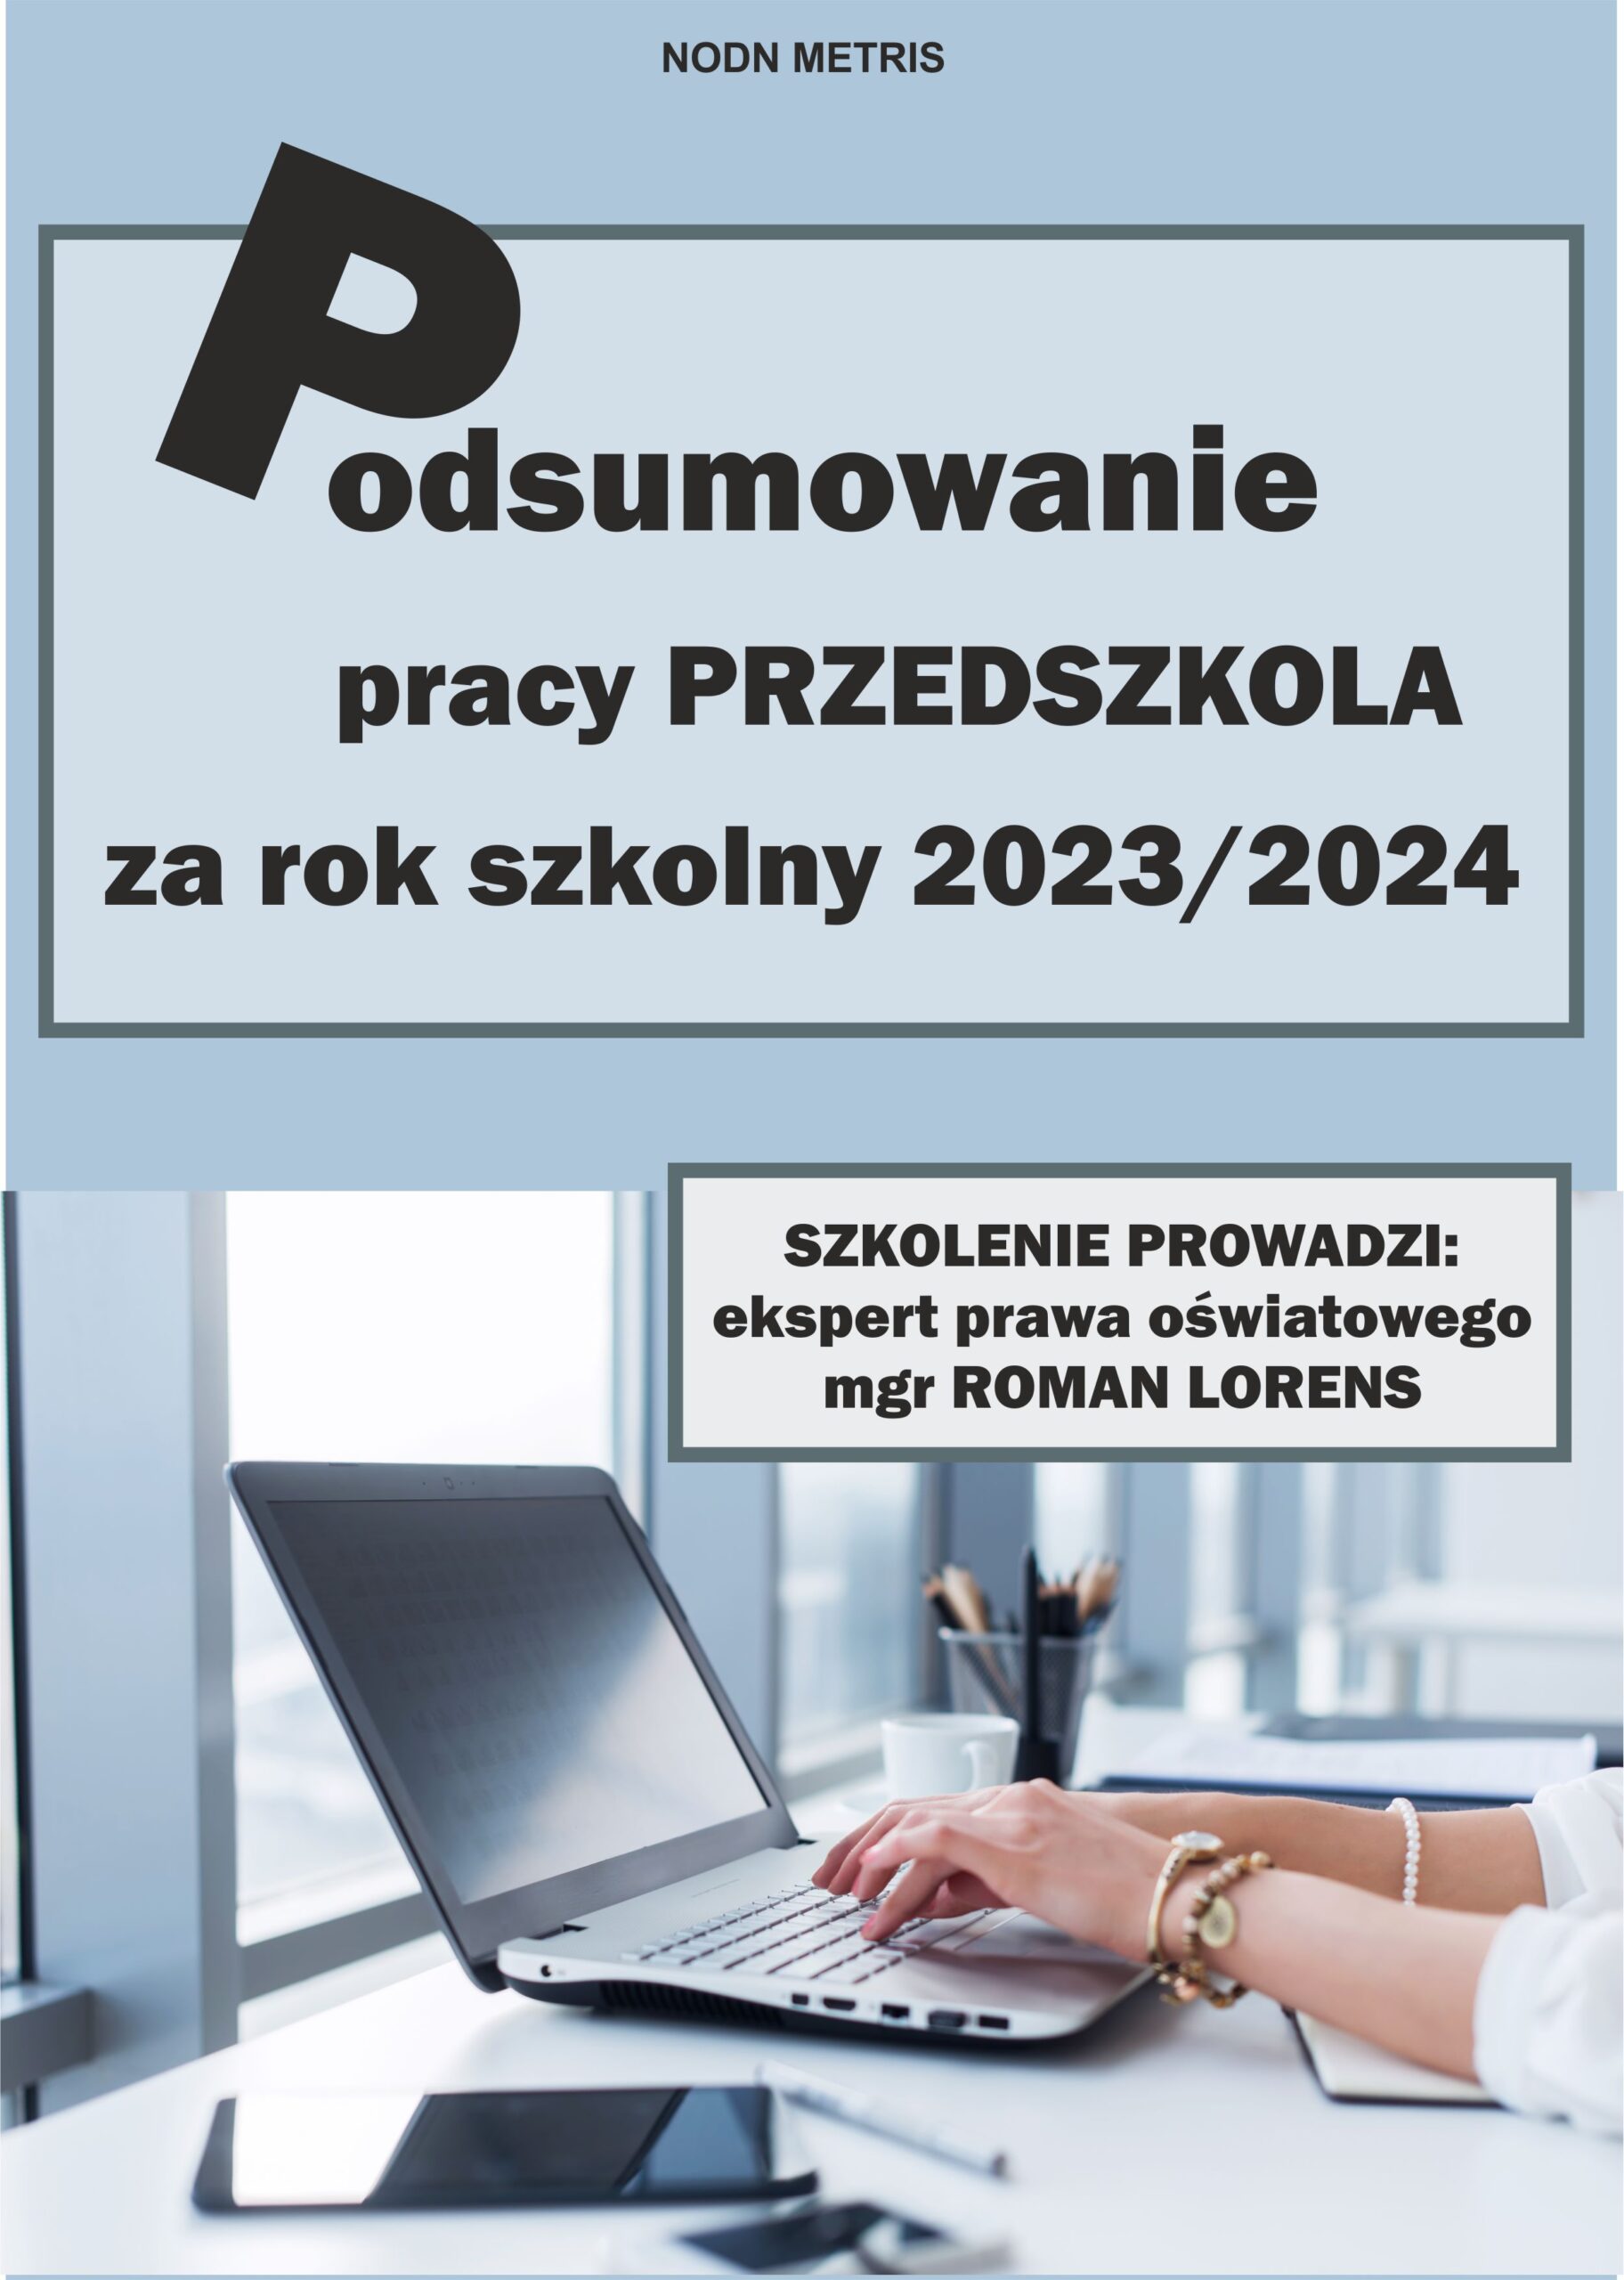 Podsumowanie pracy PRZEDSZKOLA za rok 2023/2024